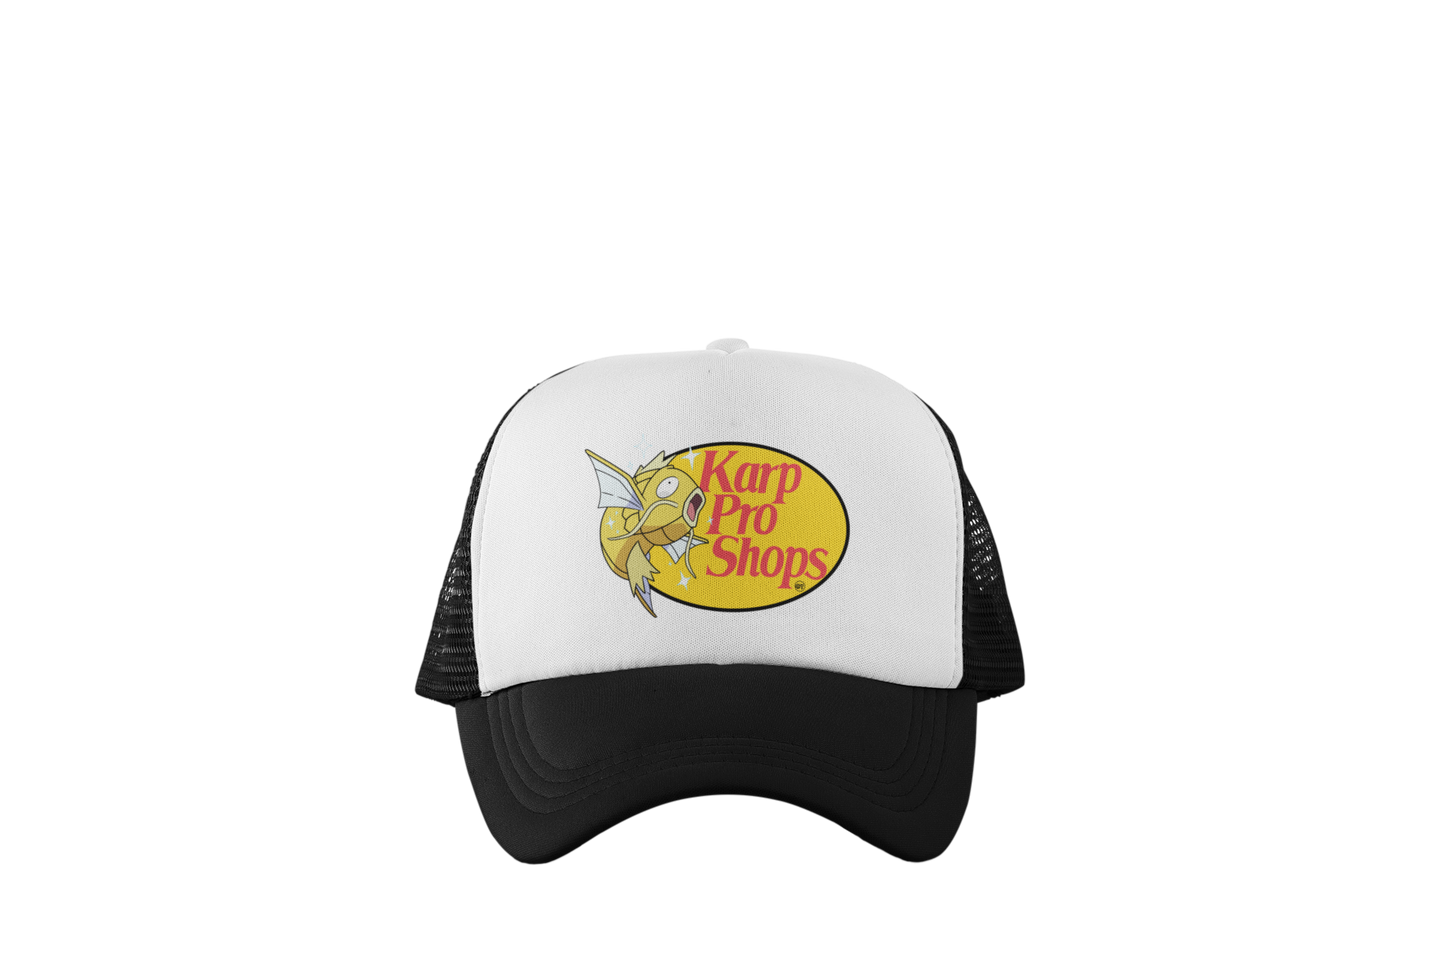 Karp Pro Shops Trucker Hats